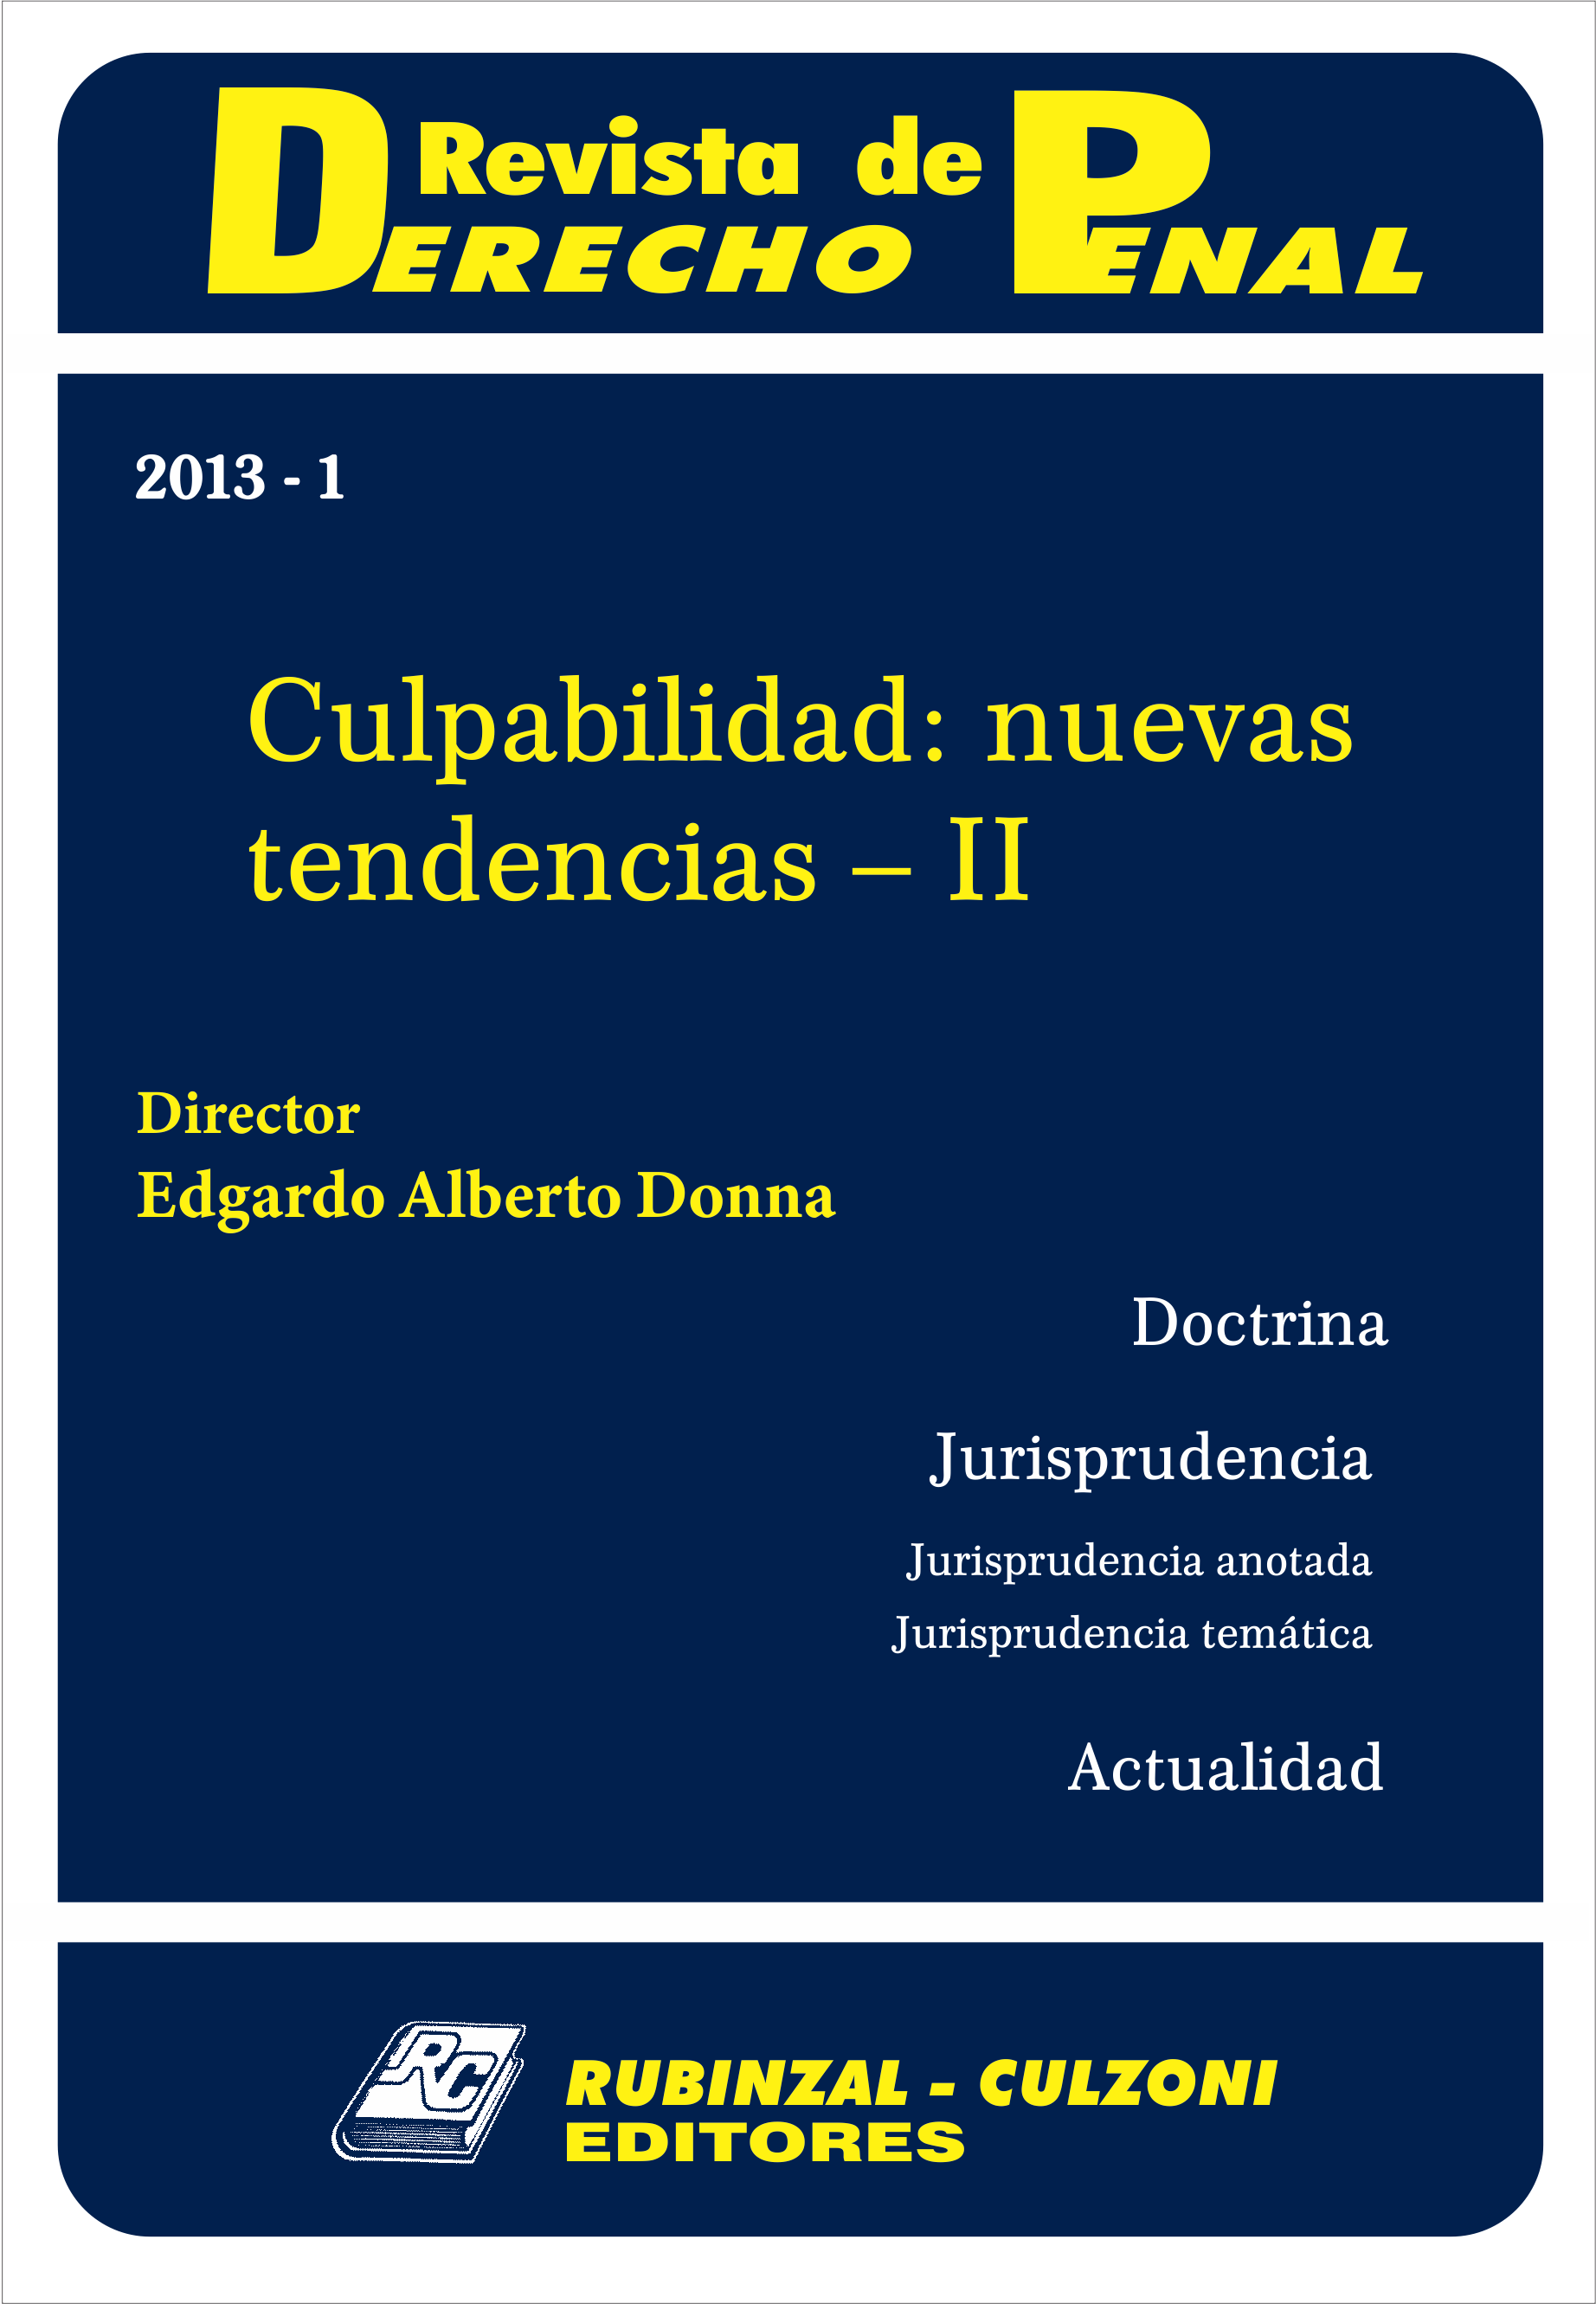 Revista de Derecho Penal - Culpabilidad: nuevas tendencias - II. [2013-1]